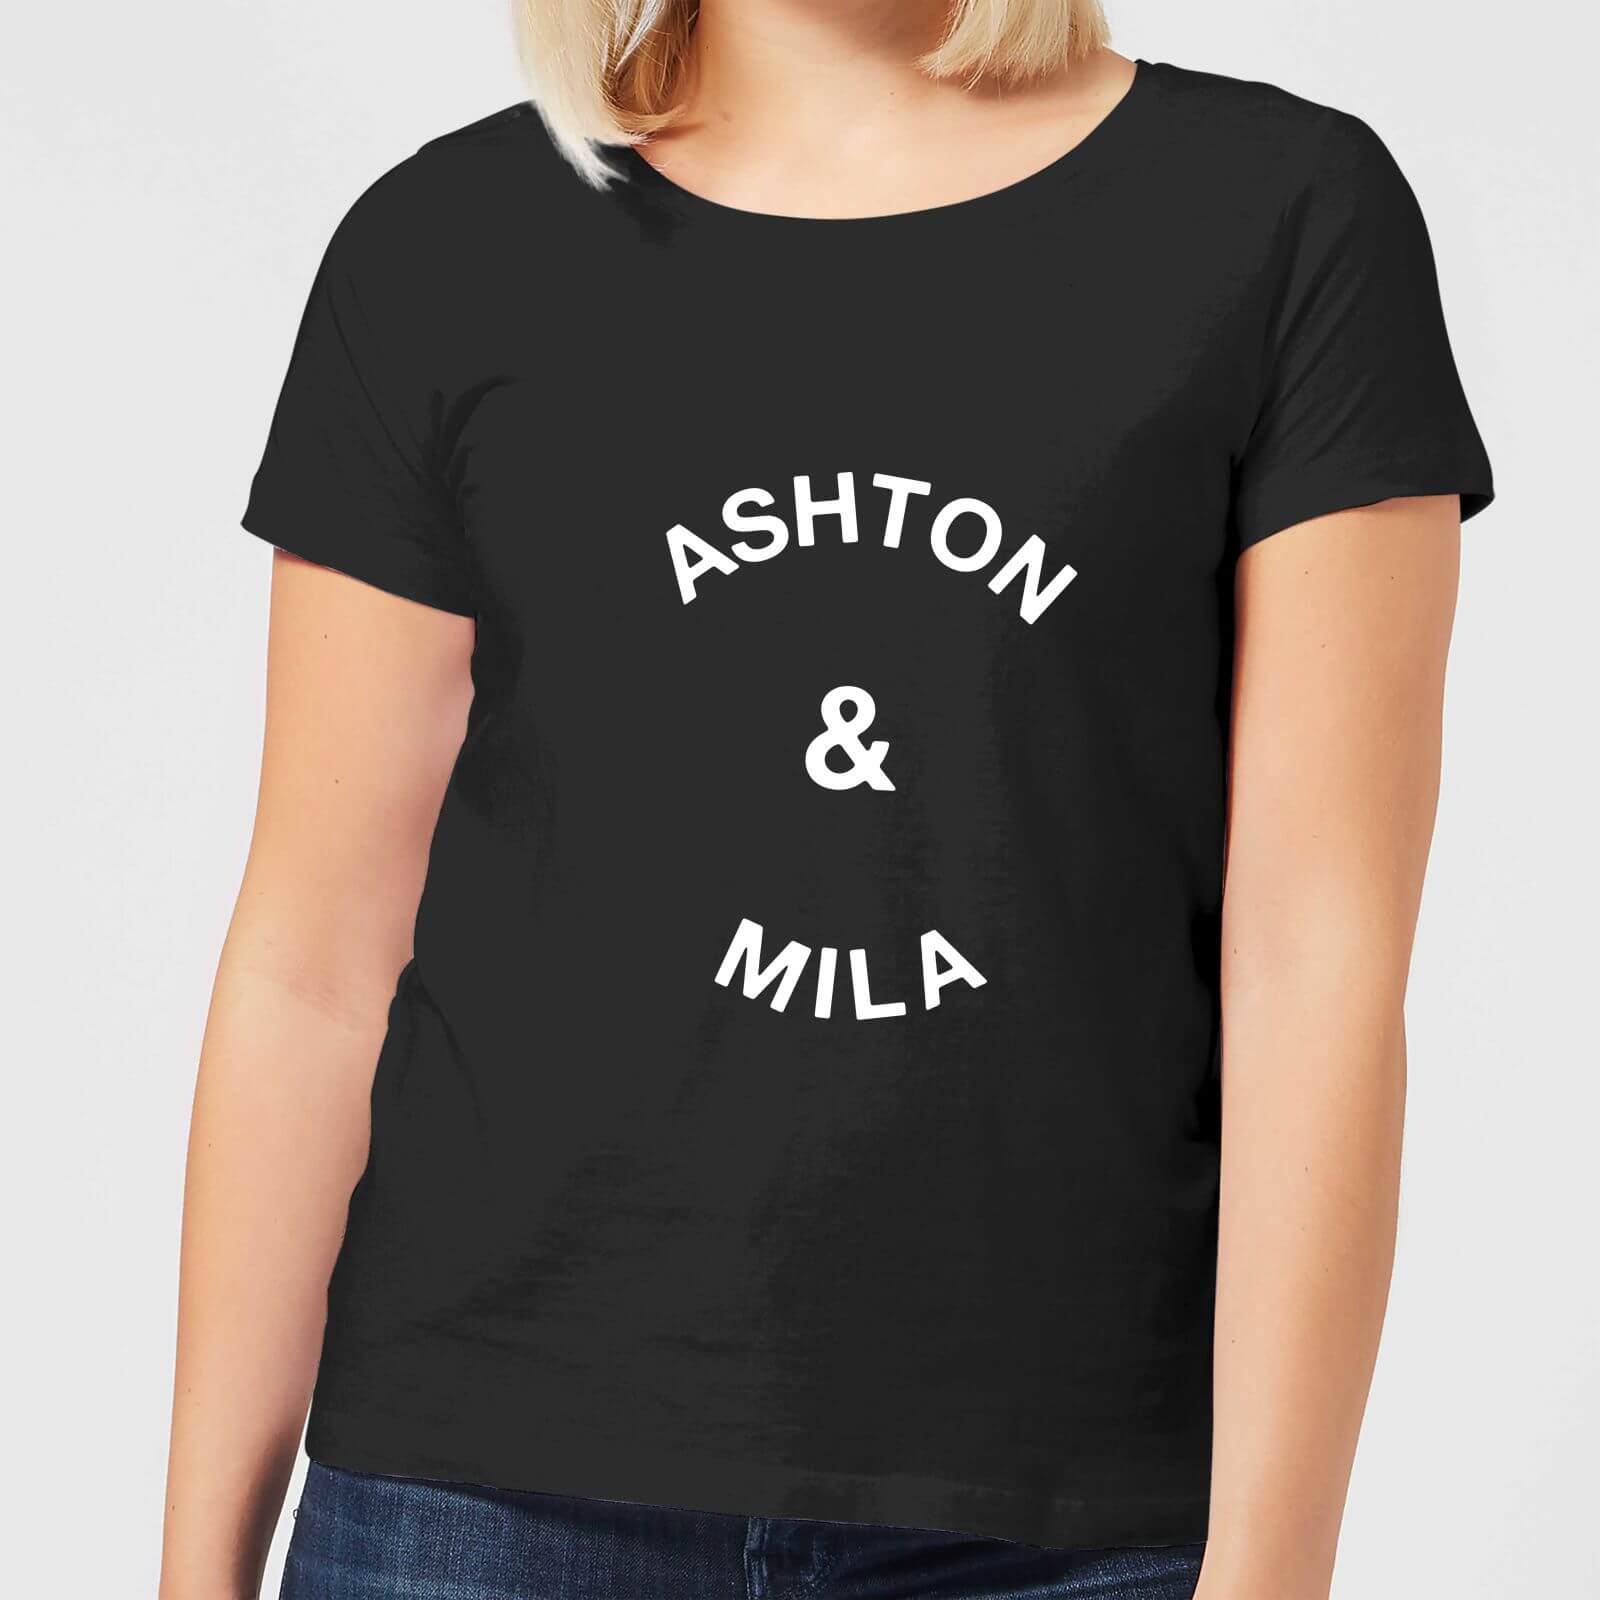 Ashton & Mila Women's T-Shirt - Black - XL - Black